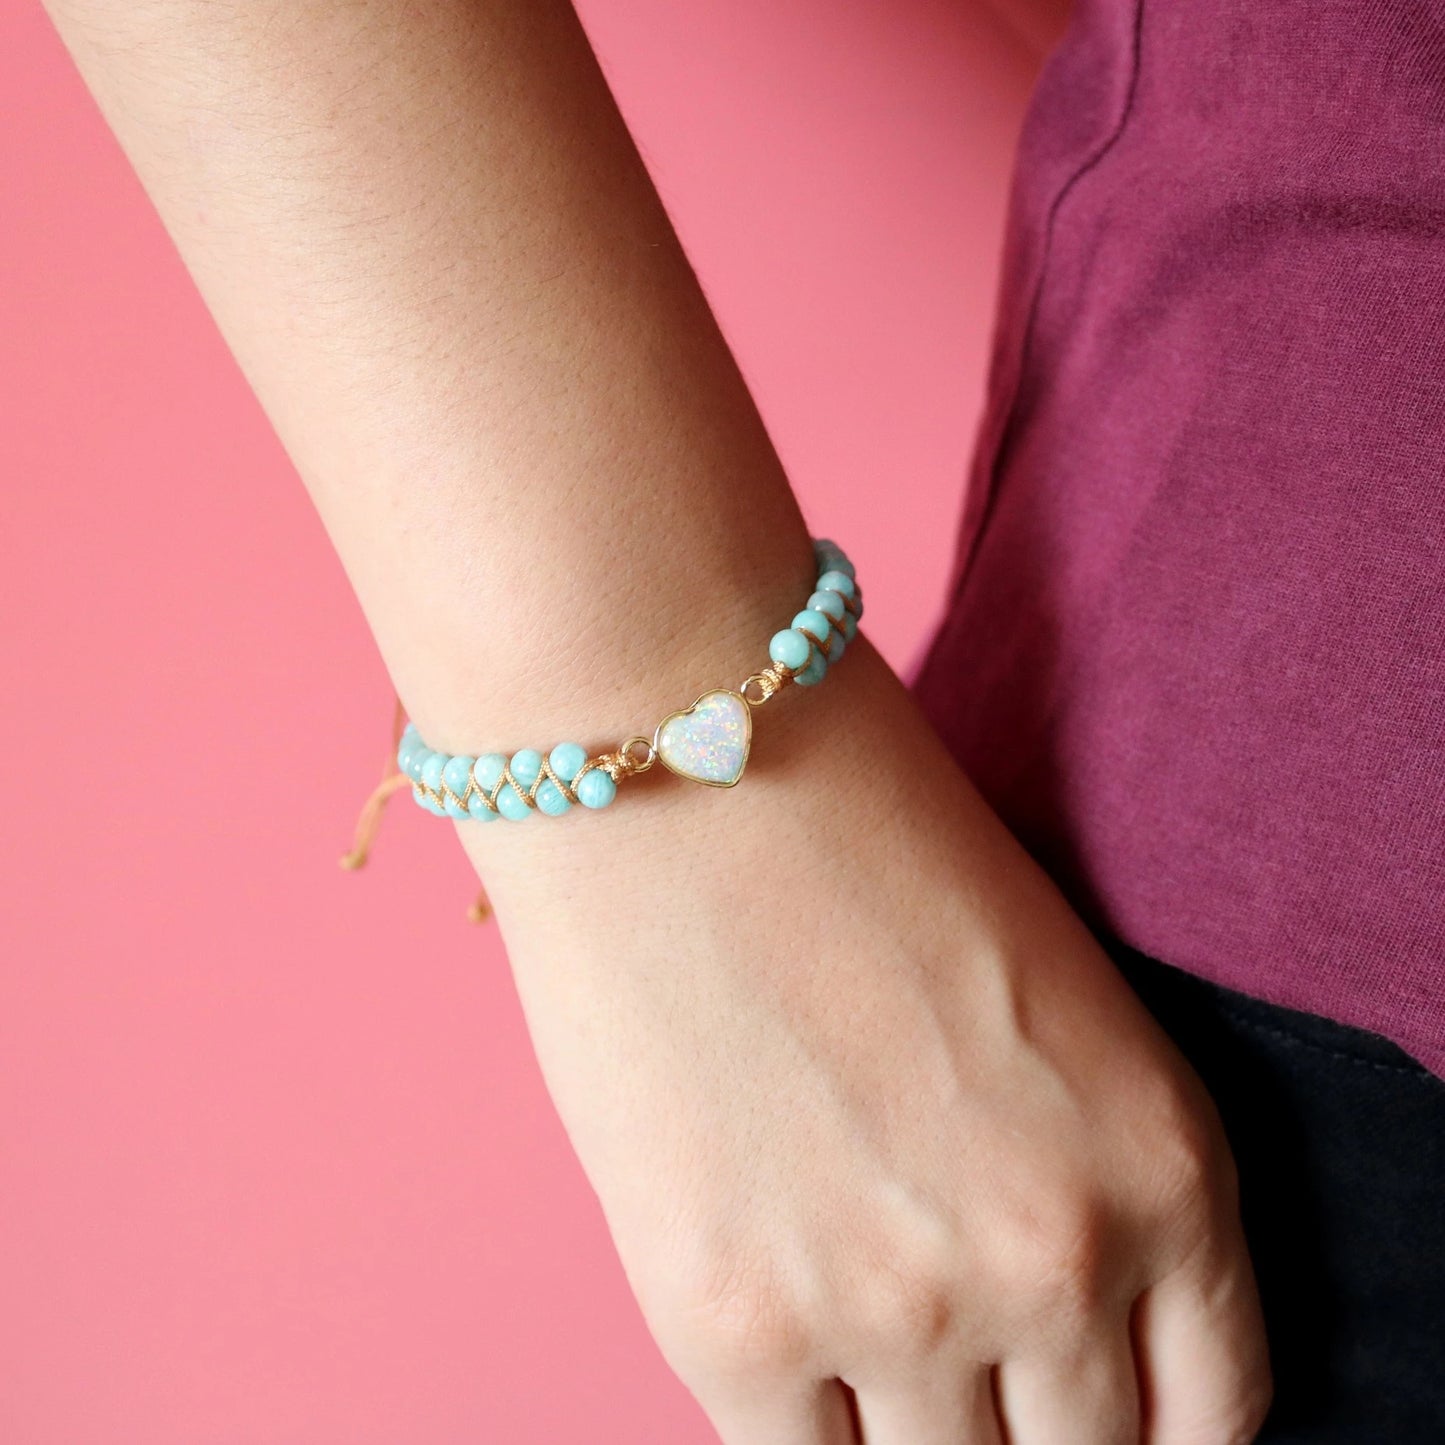 Heart Charm Bracelet - Handwoven Aquamarine Agate Beaded Bracelet